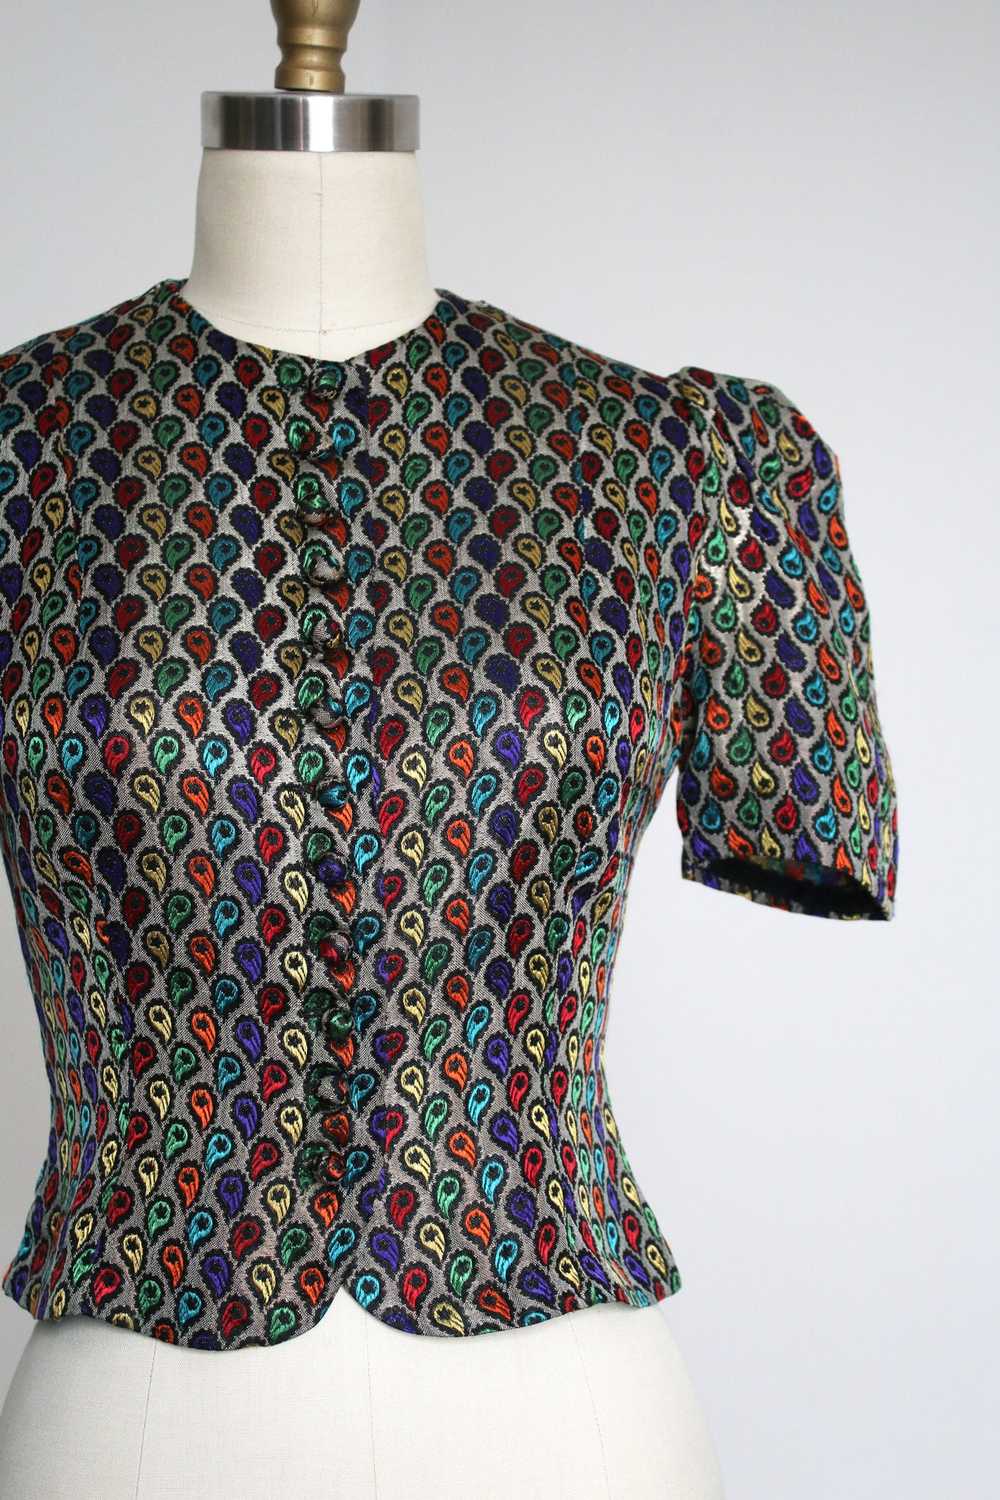 vintage 1930s metallic lamé blouse {s} - image 2